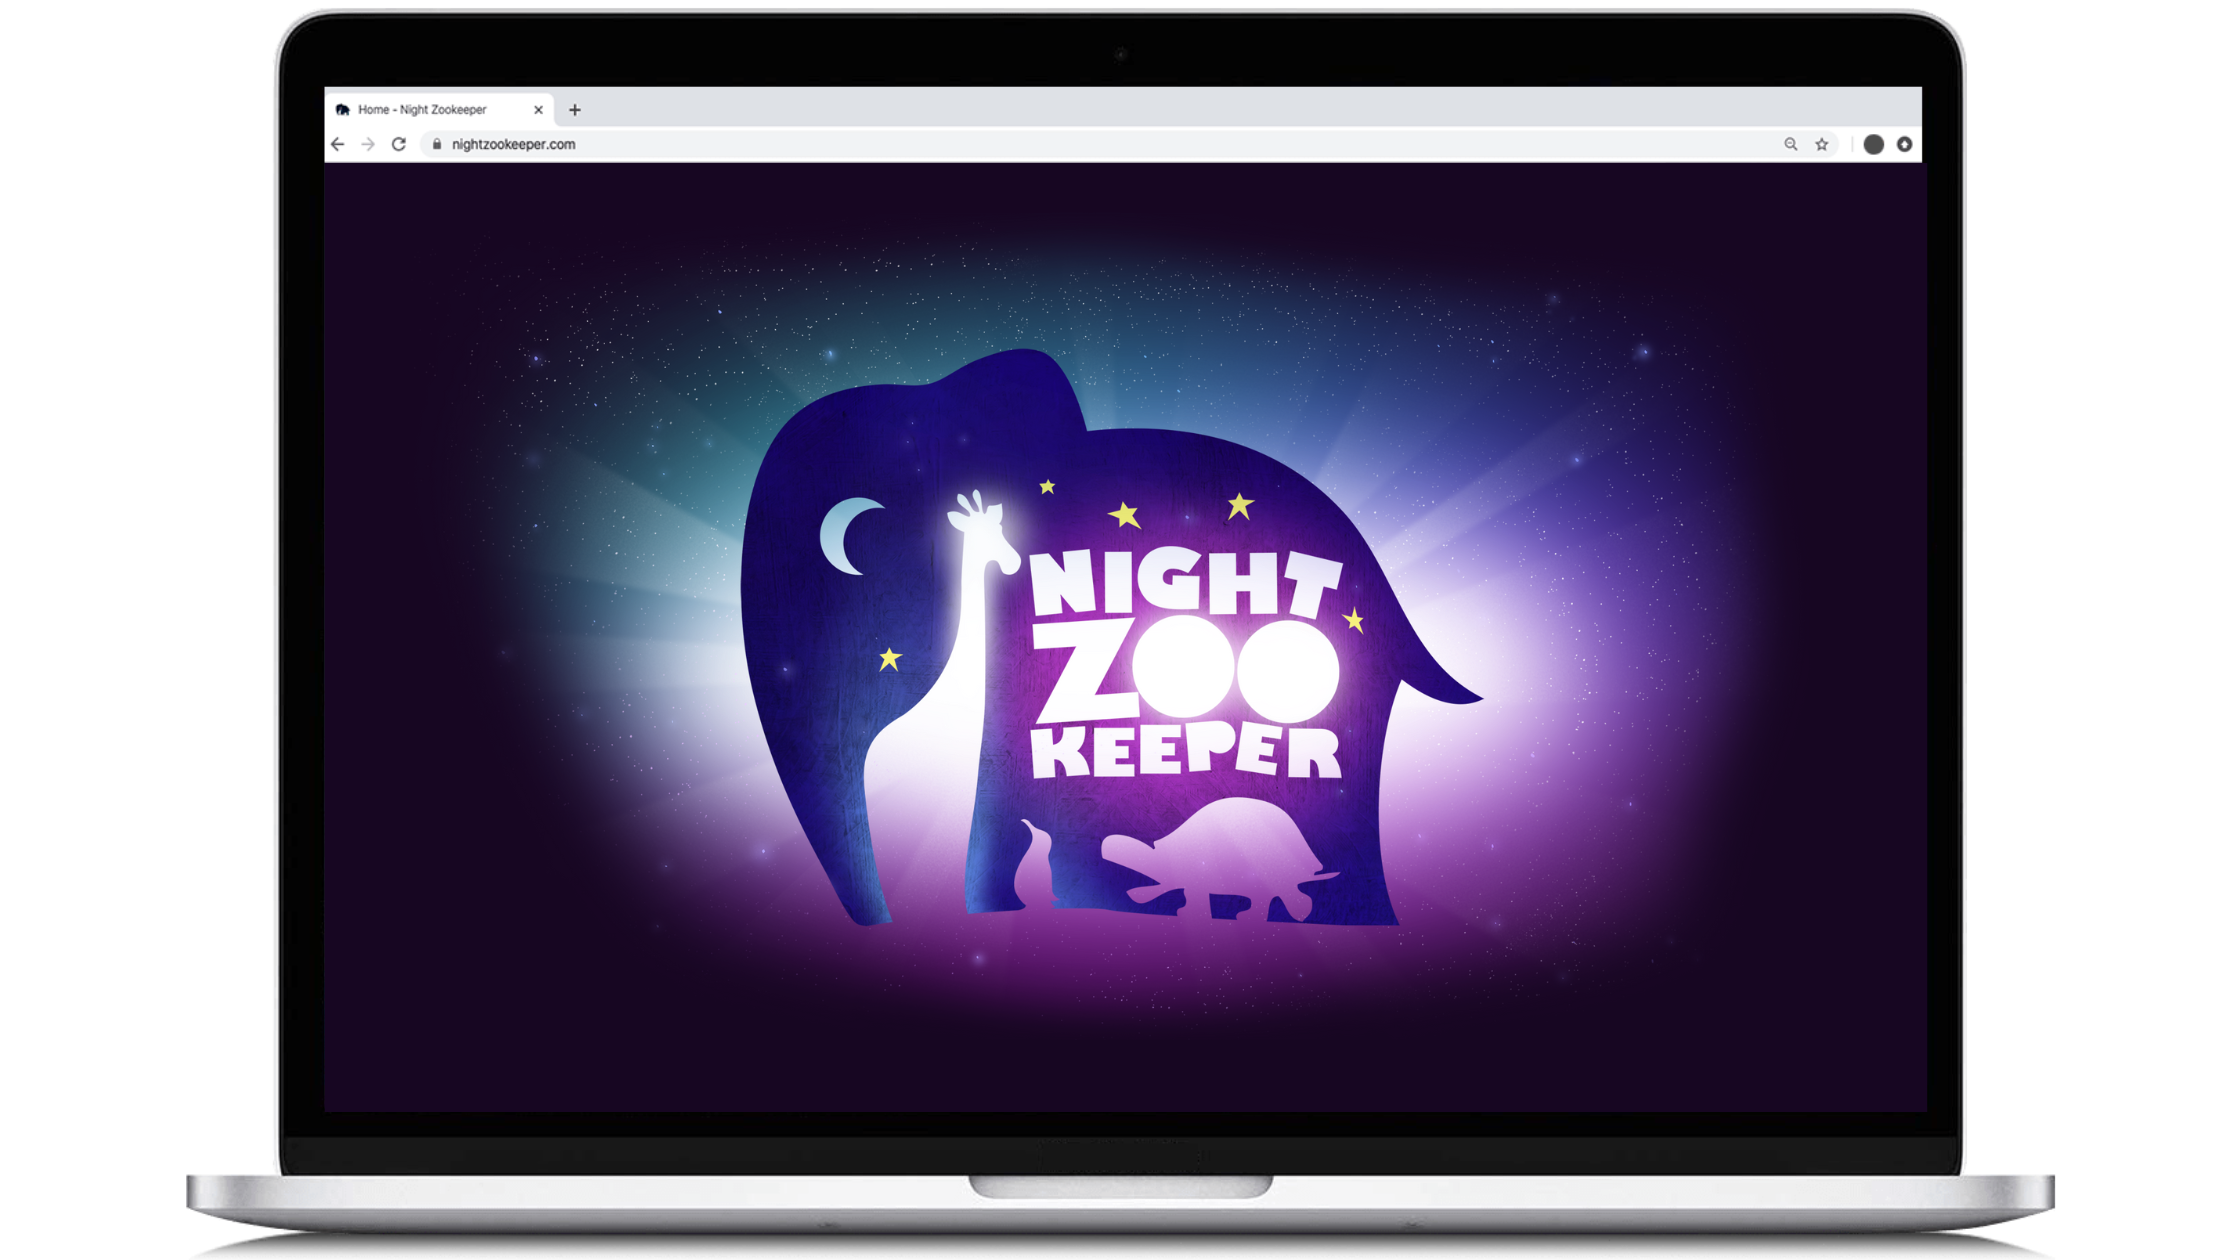 Night Zookeeper logo, displayed on laptop screen.